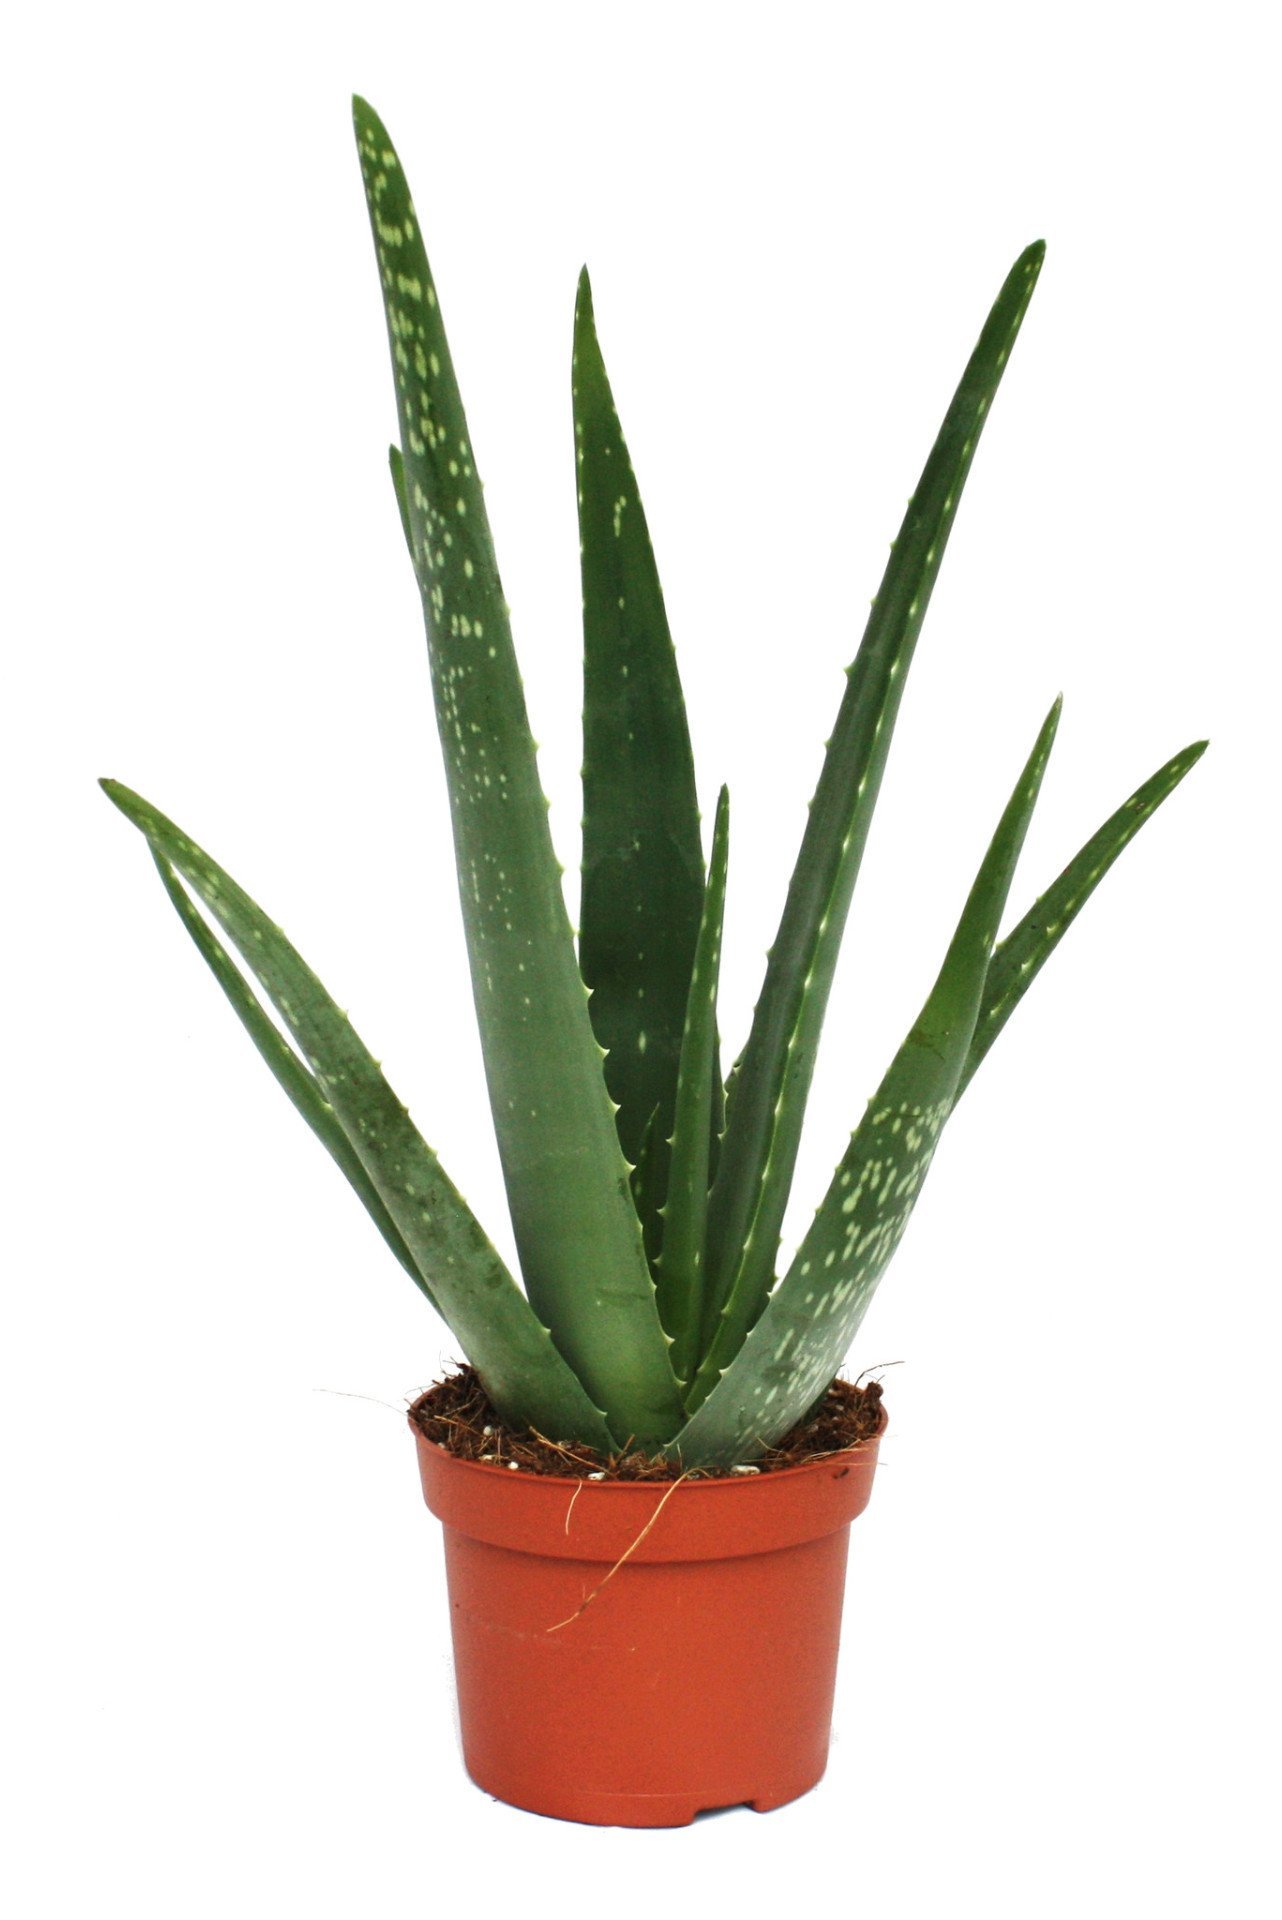 Aloe Vera - Buy Indoor Outdoor Plants Online - LawnKart.com ...